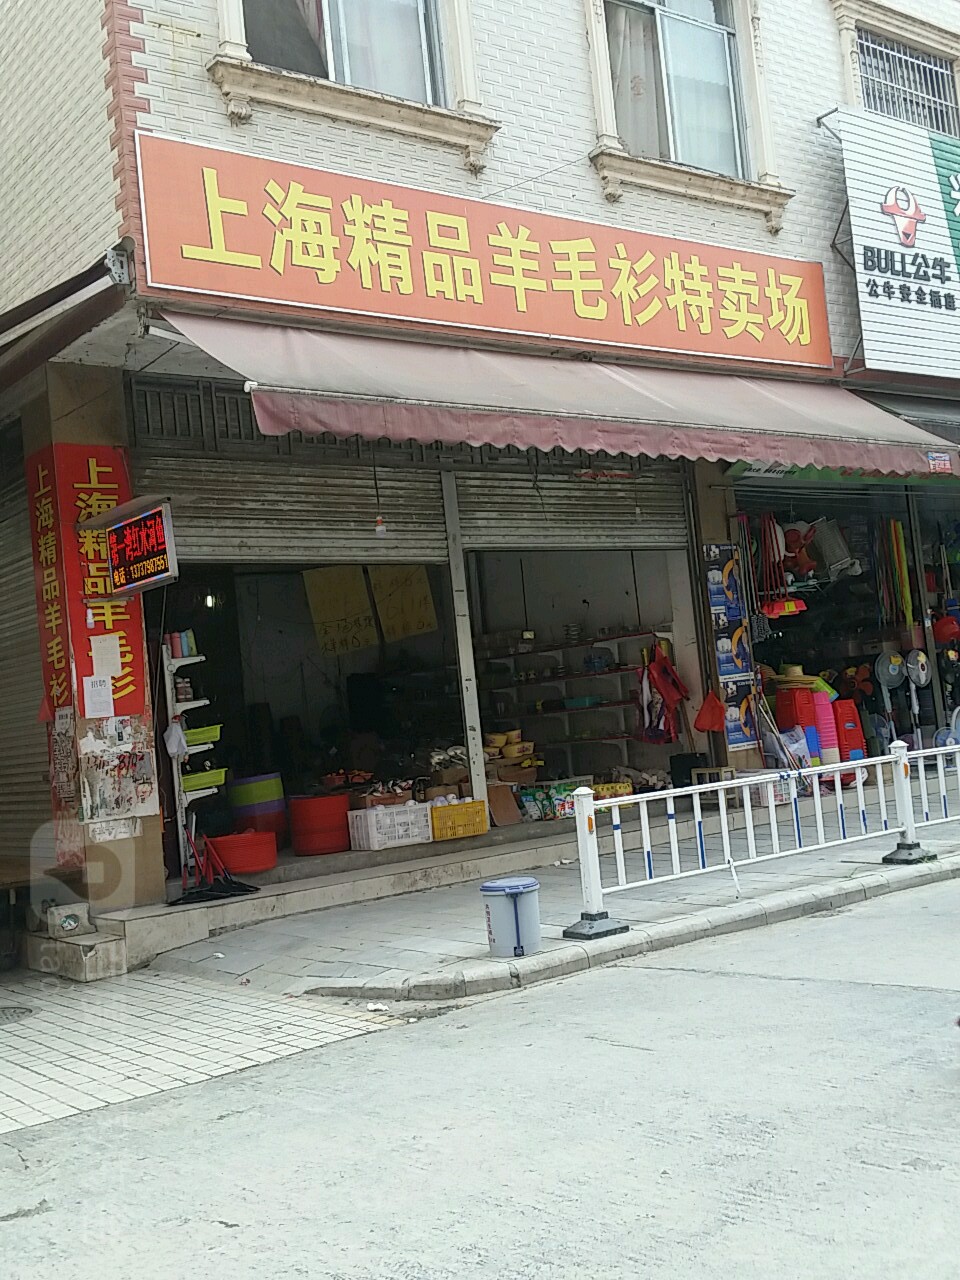 上海精品羊毛衫特賣場